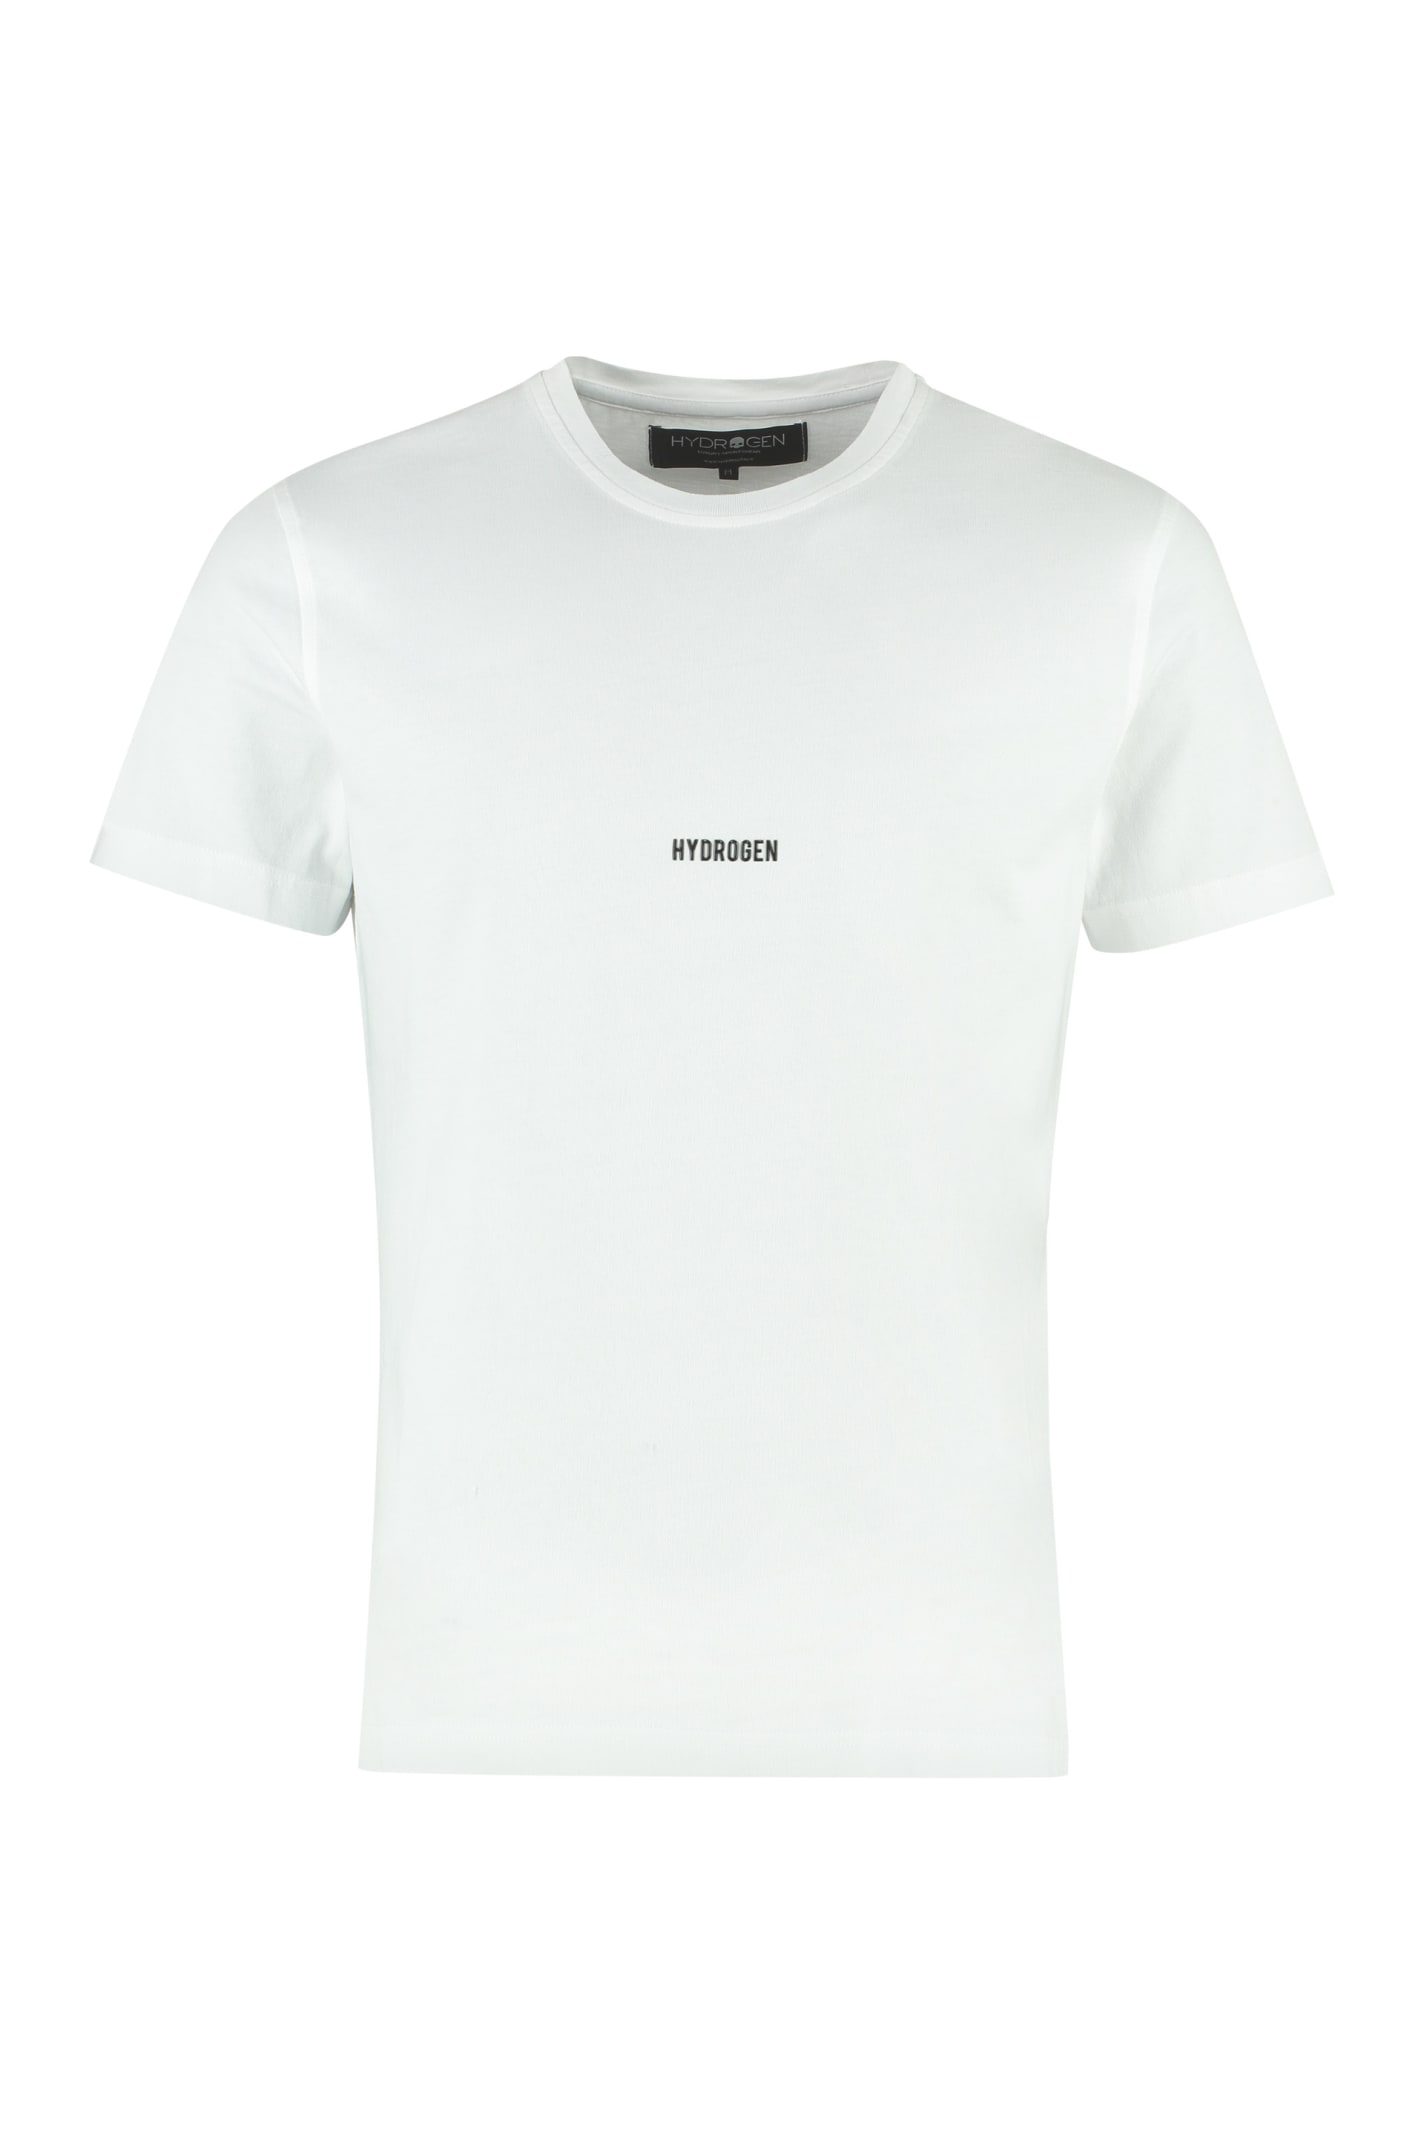 Hydrogen Cotton Crew-neck T-shirt